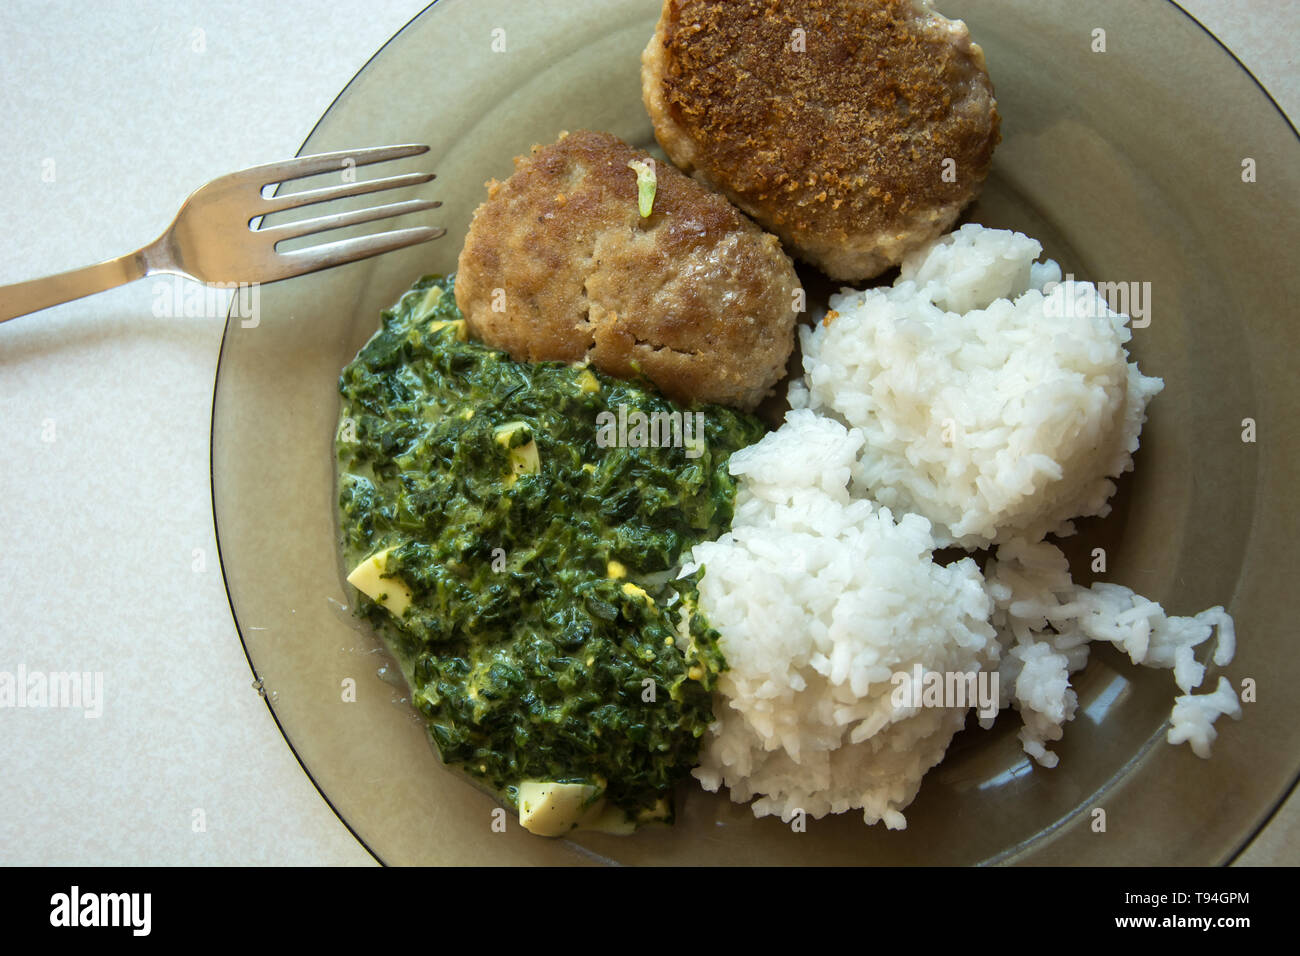 Auf einem Teller Teller, Hackfleisch Schnitzel, Reis und Spinat - Ansicht von oben Stockfoto